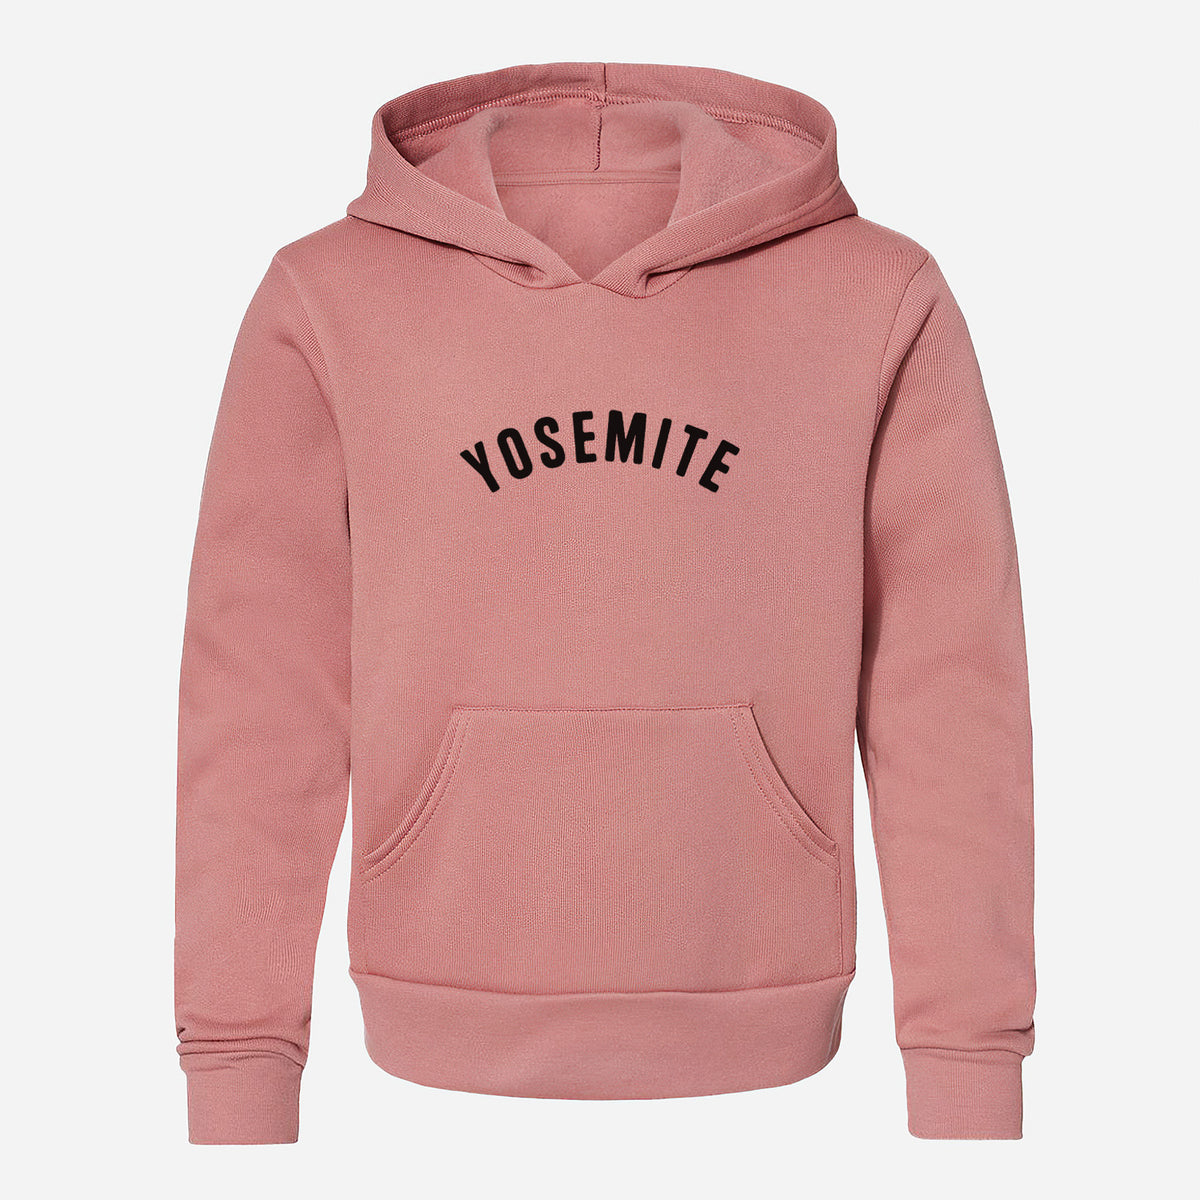 Yosemite - Youth Hoodie Sweatshirt